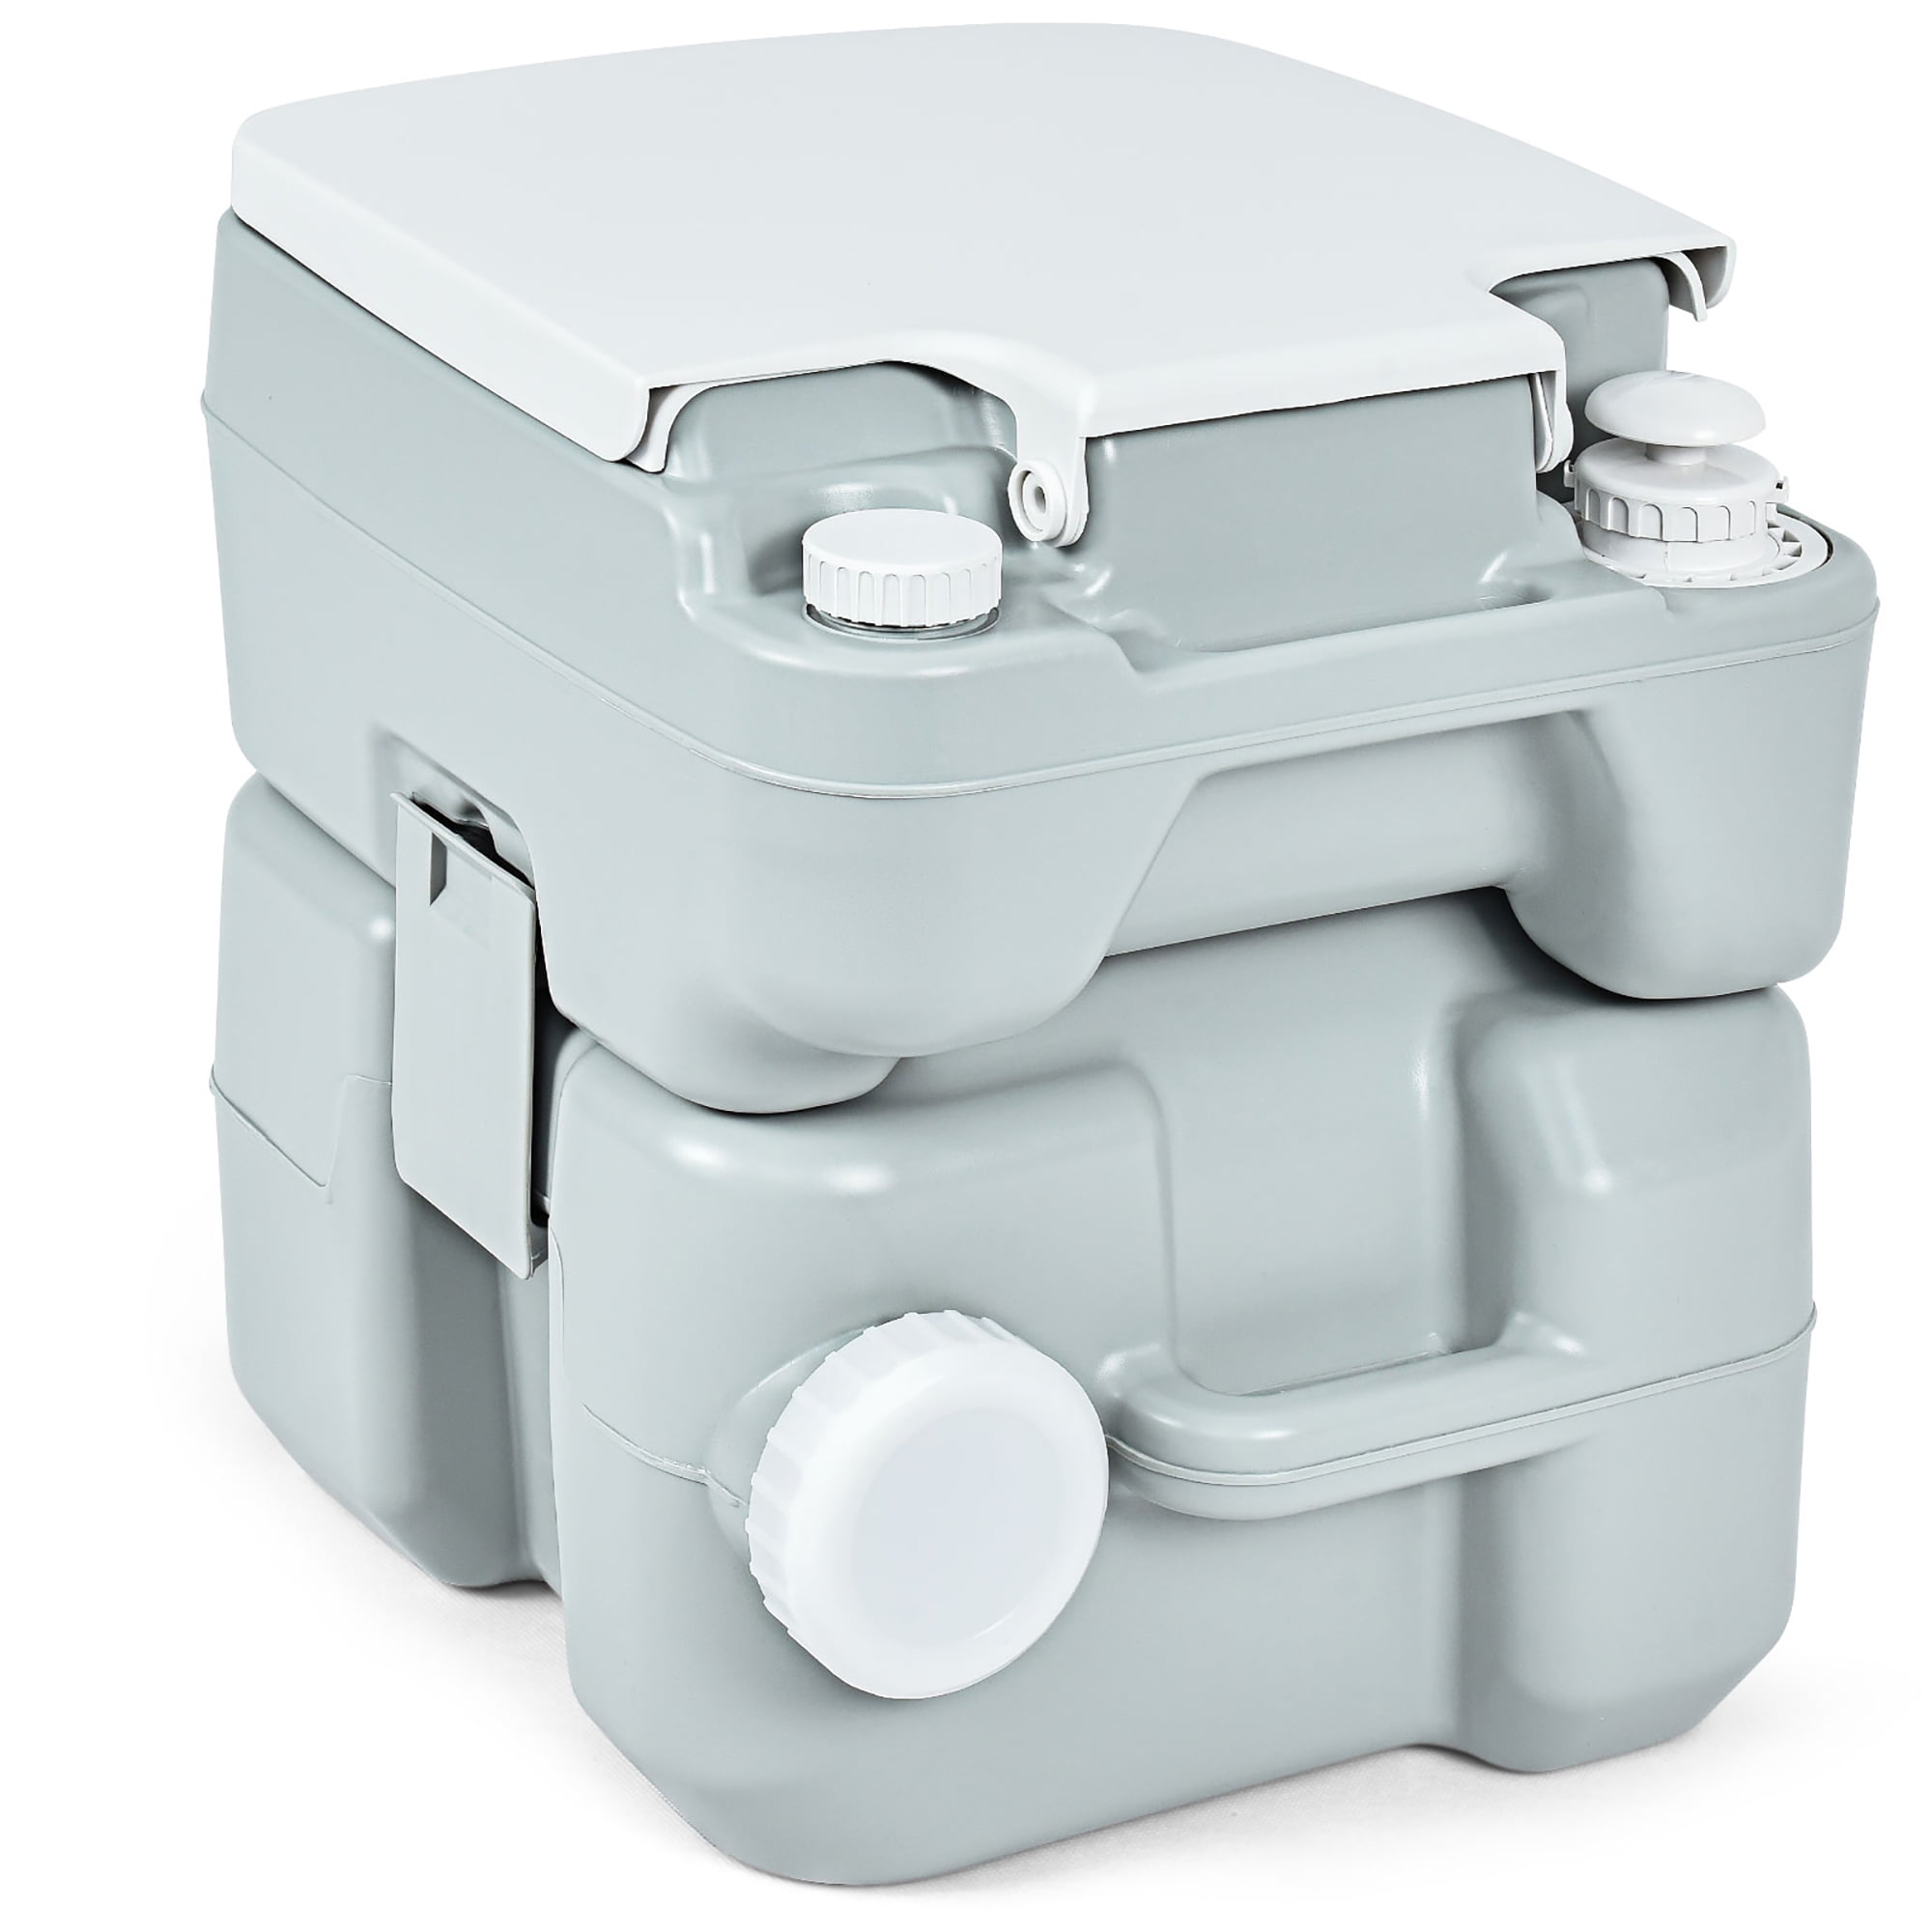 COSTWAY Toilette Sèche Portable Extérieure 5L avec Seau Intérieur